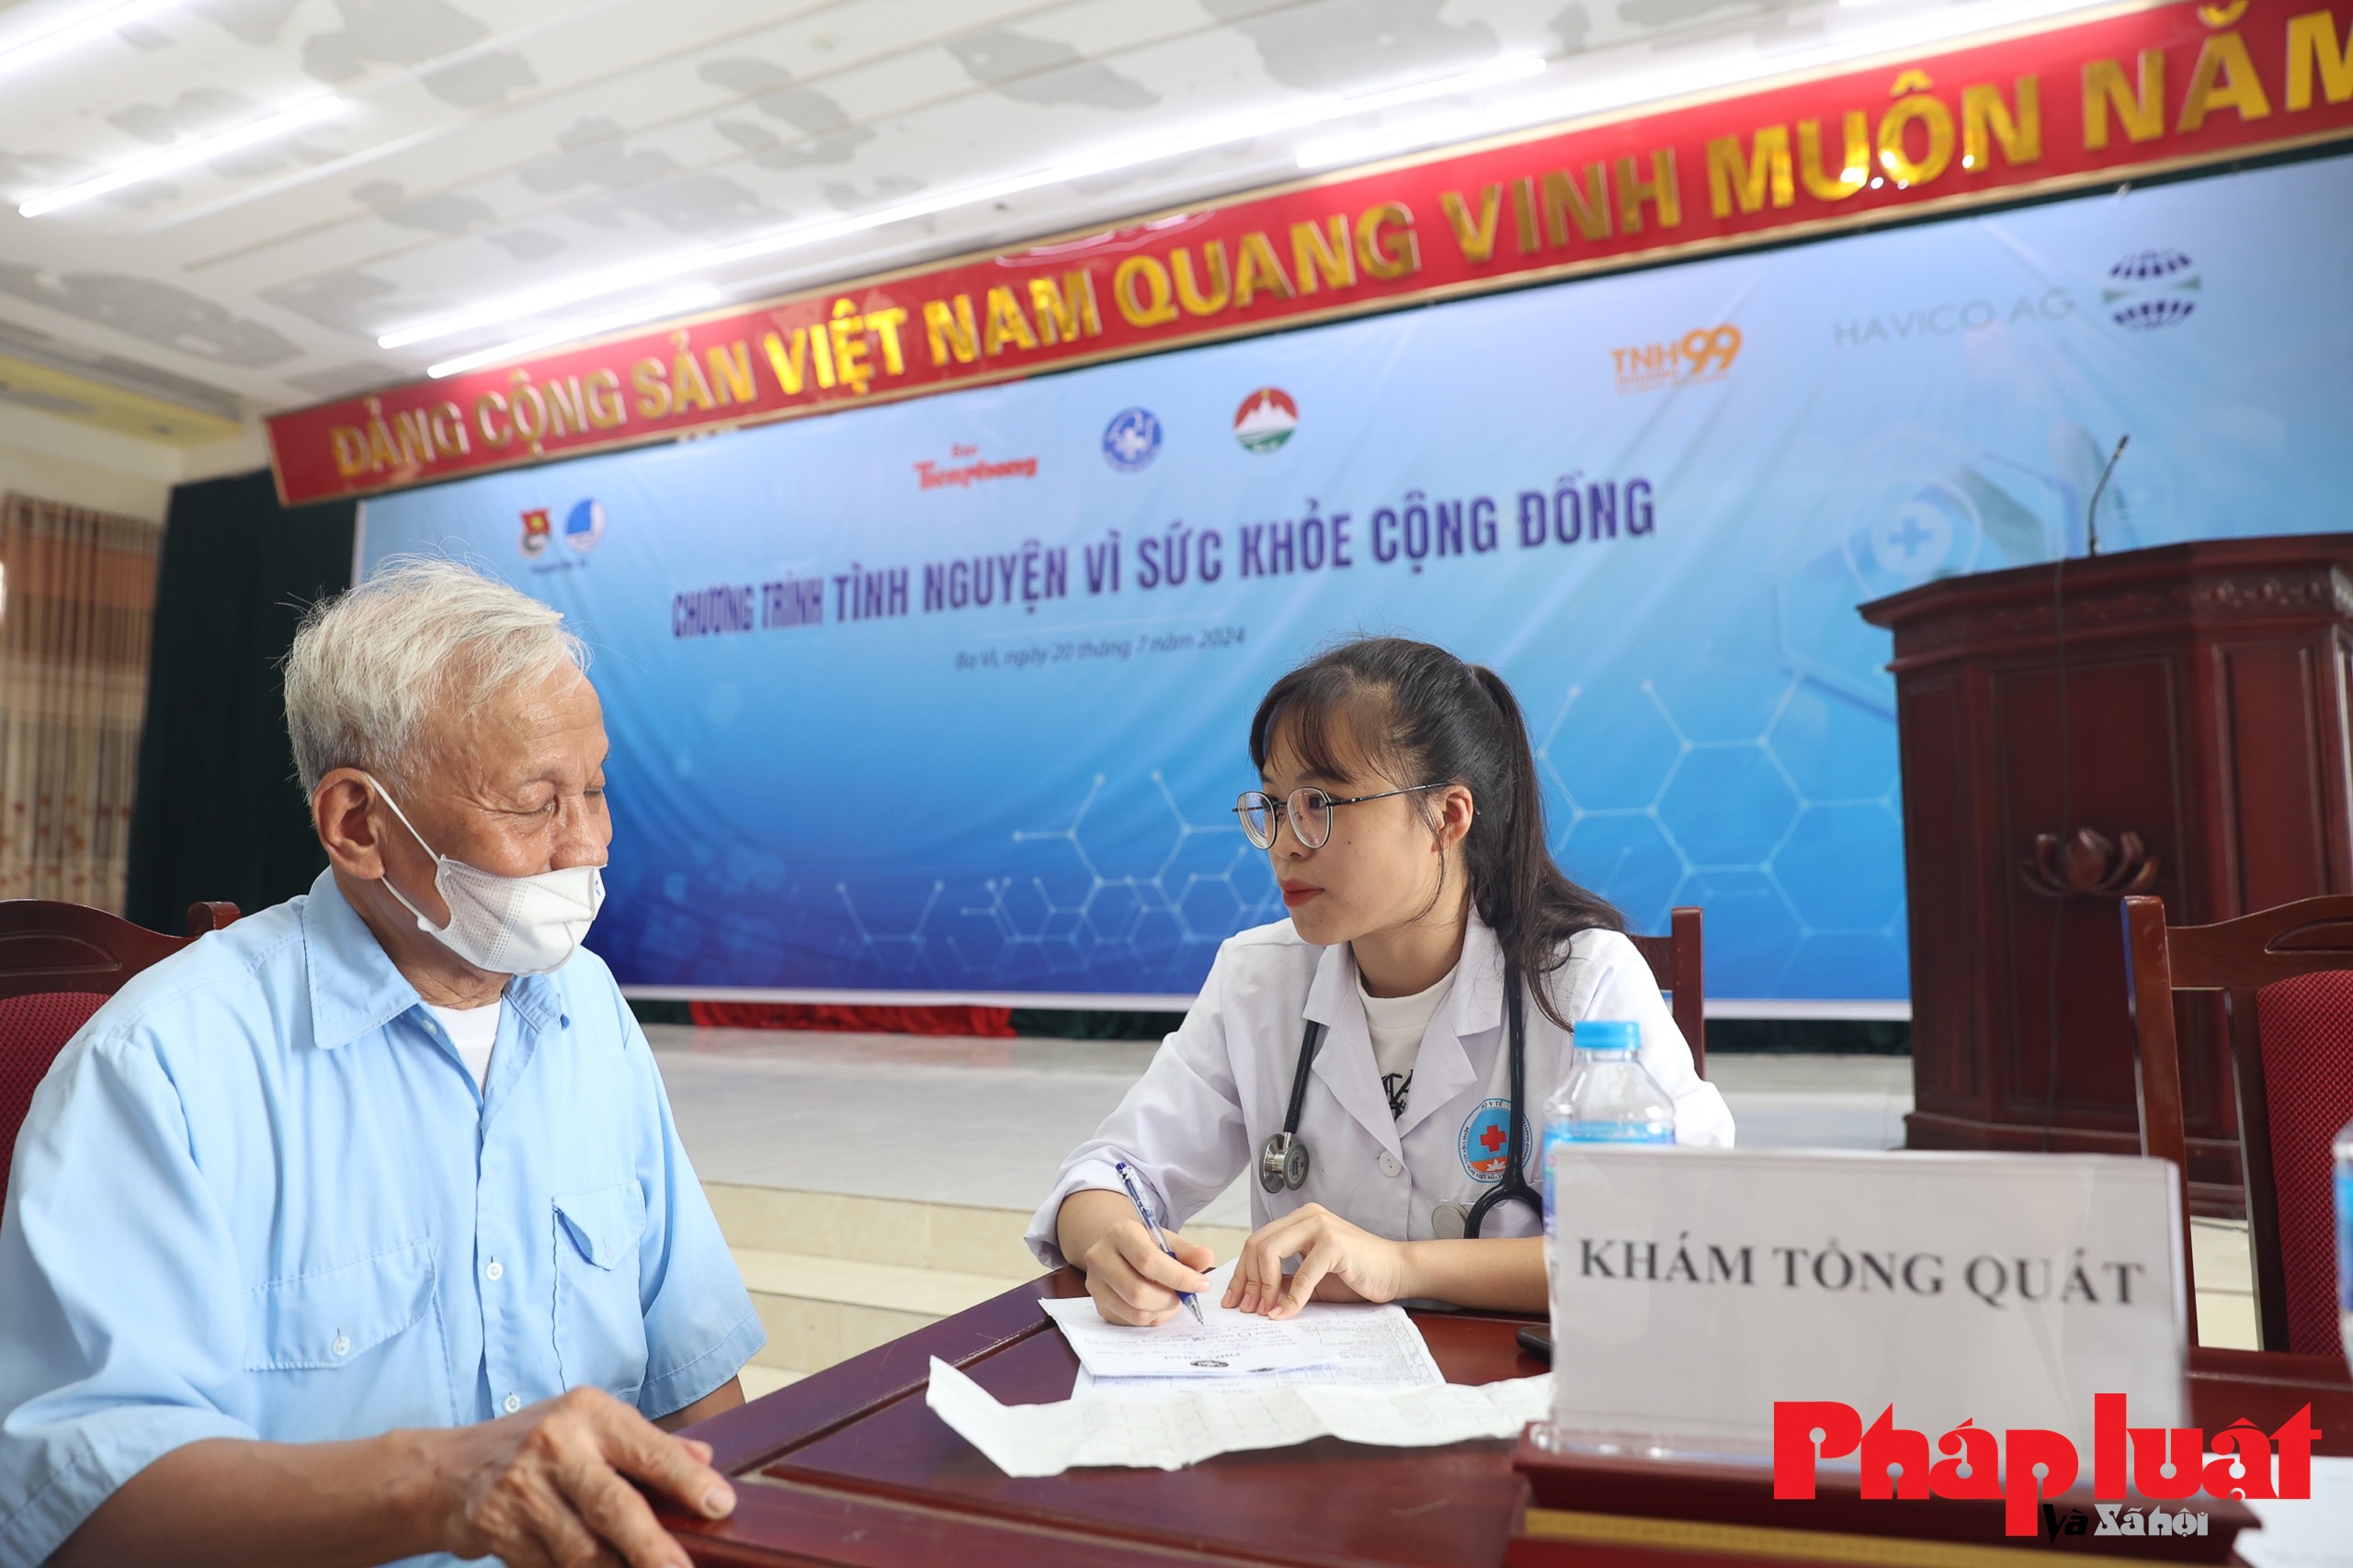 Khám sức khoẻ và cấp phát thuốc miễn phí cho người dân xã đảo duy nhất tại Hà Nội